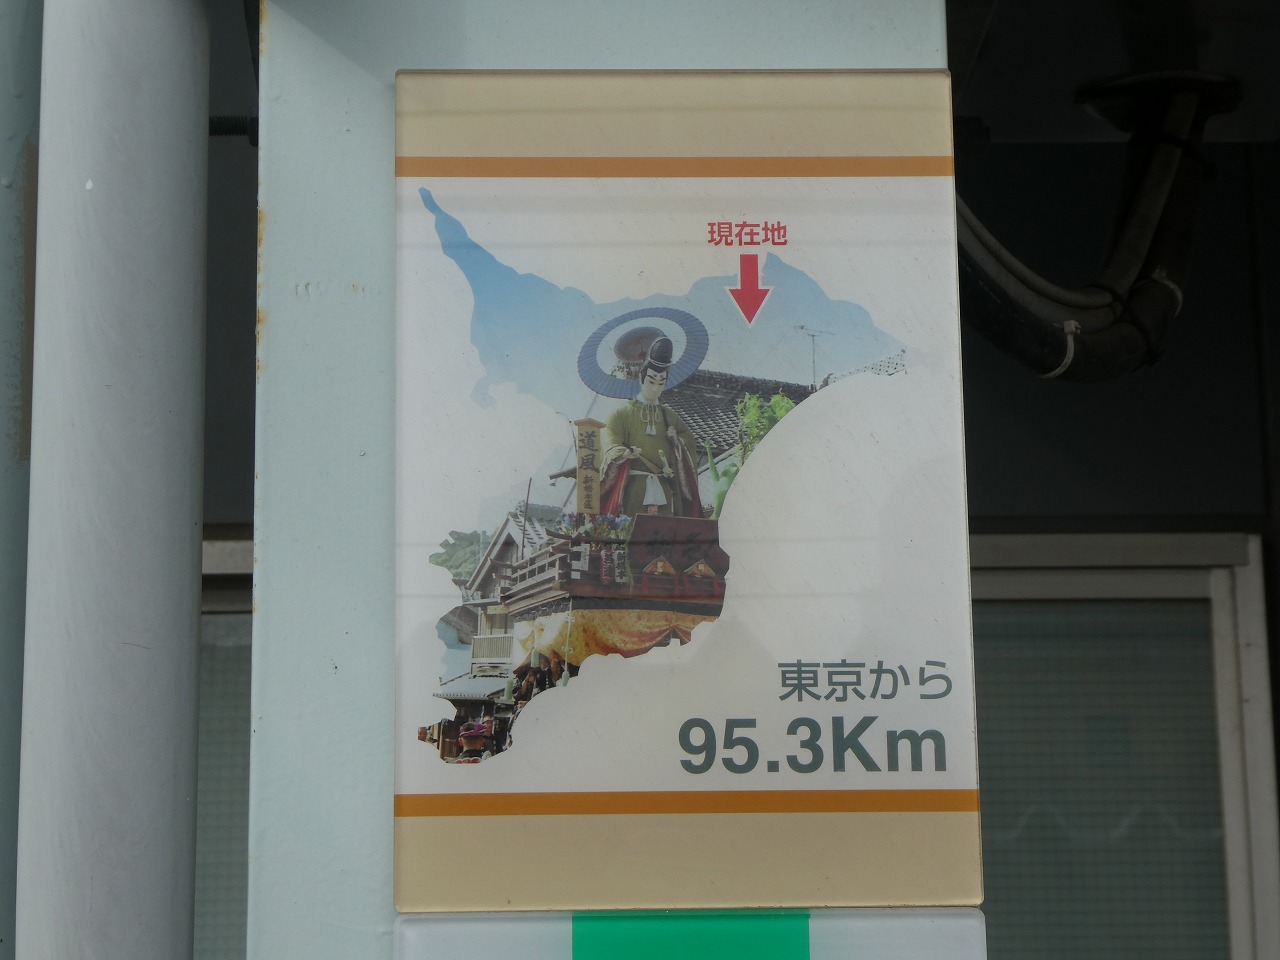 東京から95.3km